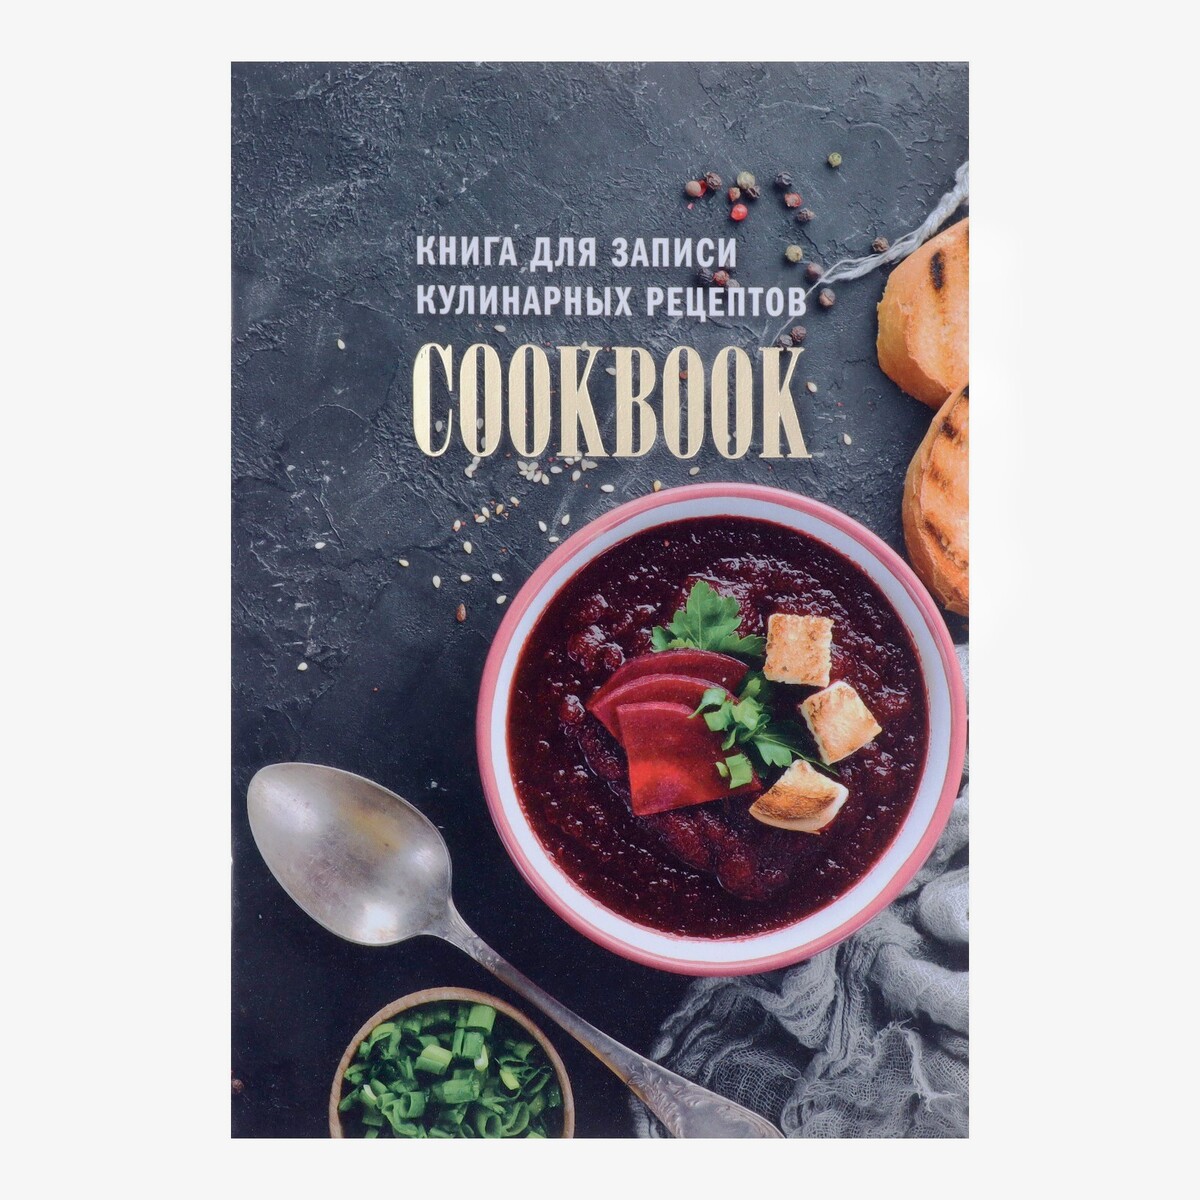 Книга для записи кулинарных рецептов а5, 48 листов нескучная еда краткая нестандартная книга рецептов